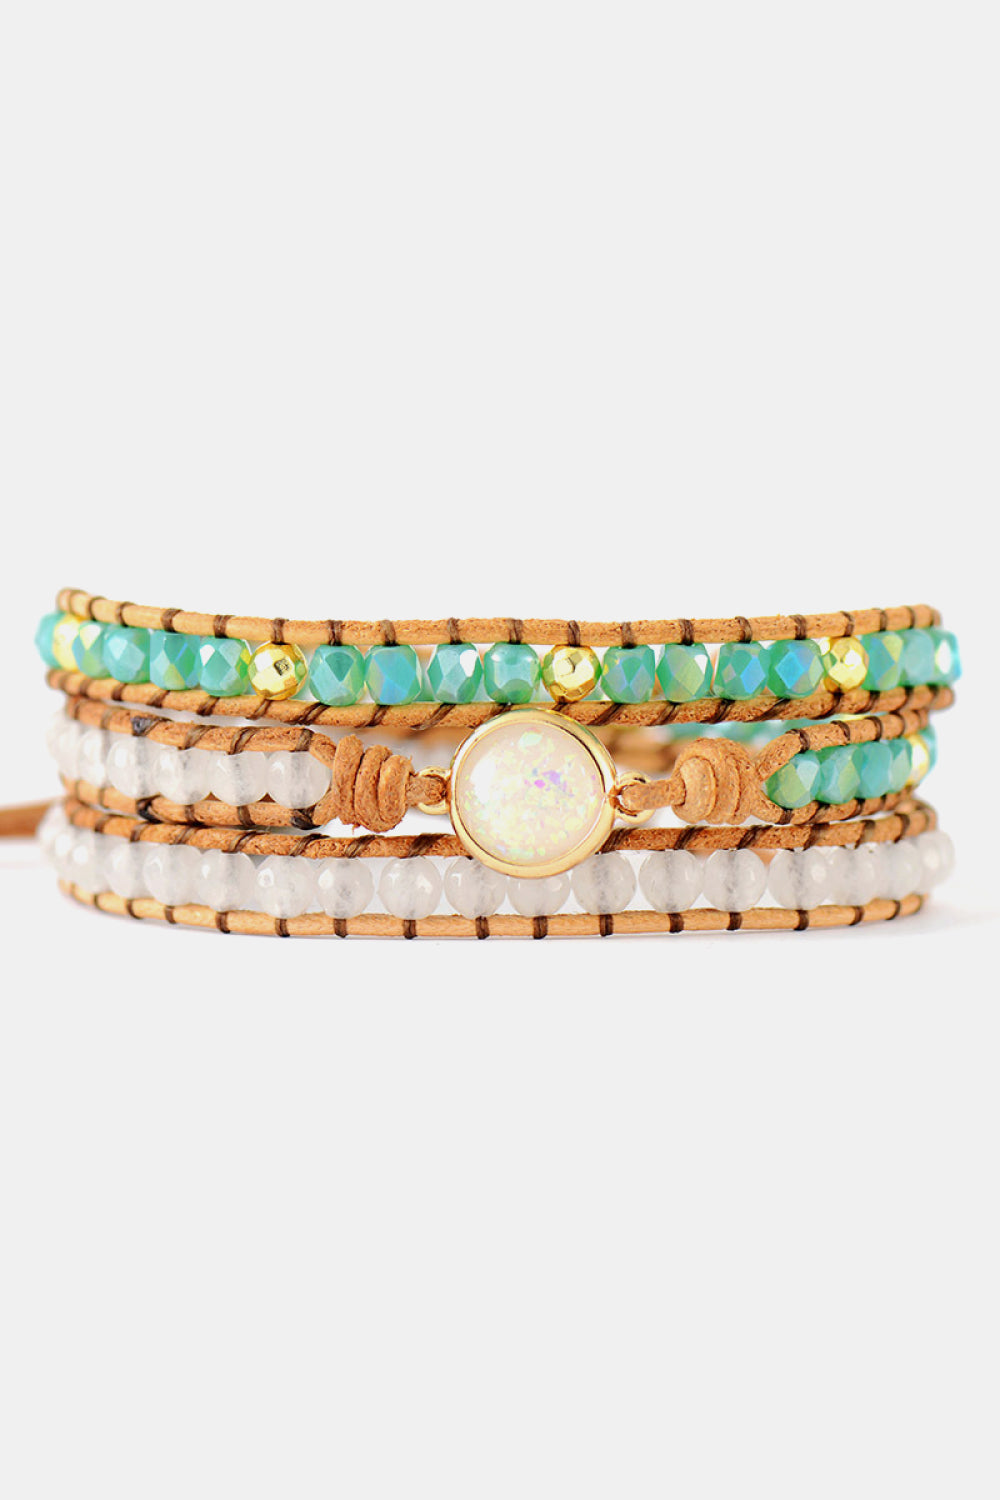 Crystal & Opal Triple-Layered Beaded Bracelet - Multicolor / One Size - Women’s Jewelry - Bracelets - 1 - 2024